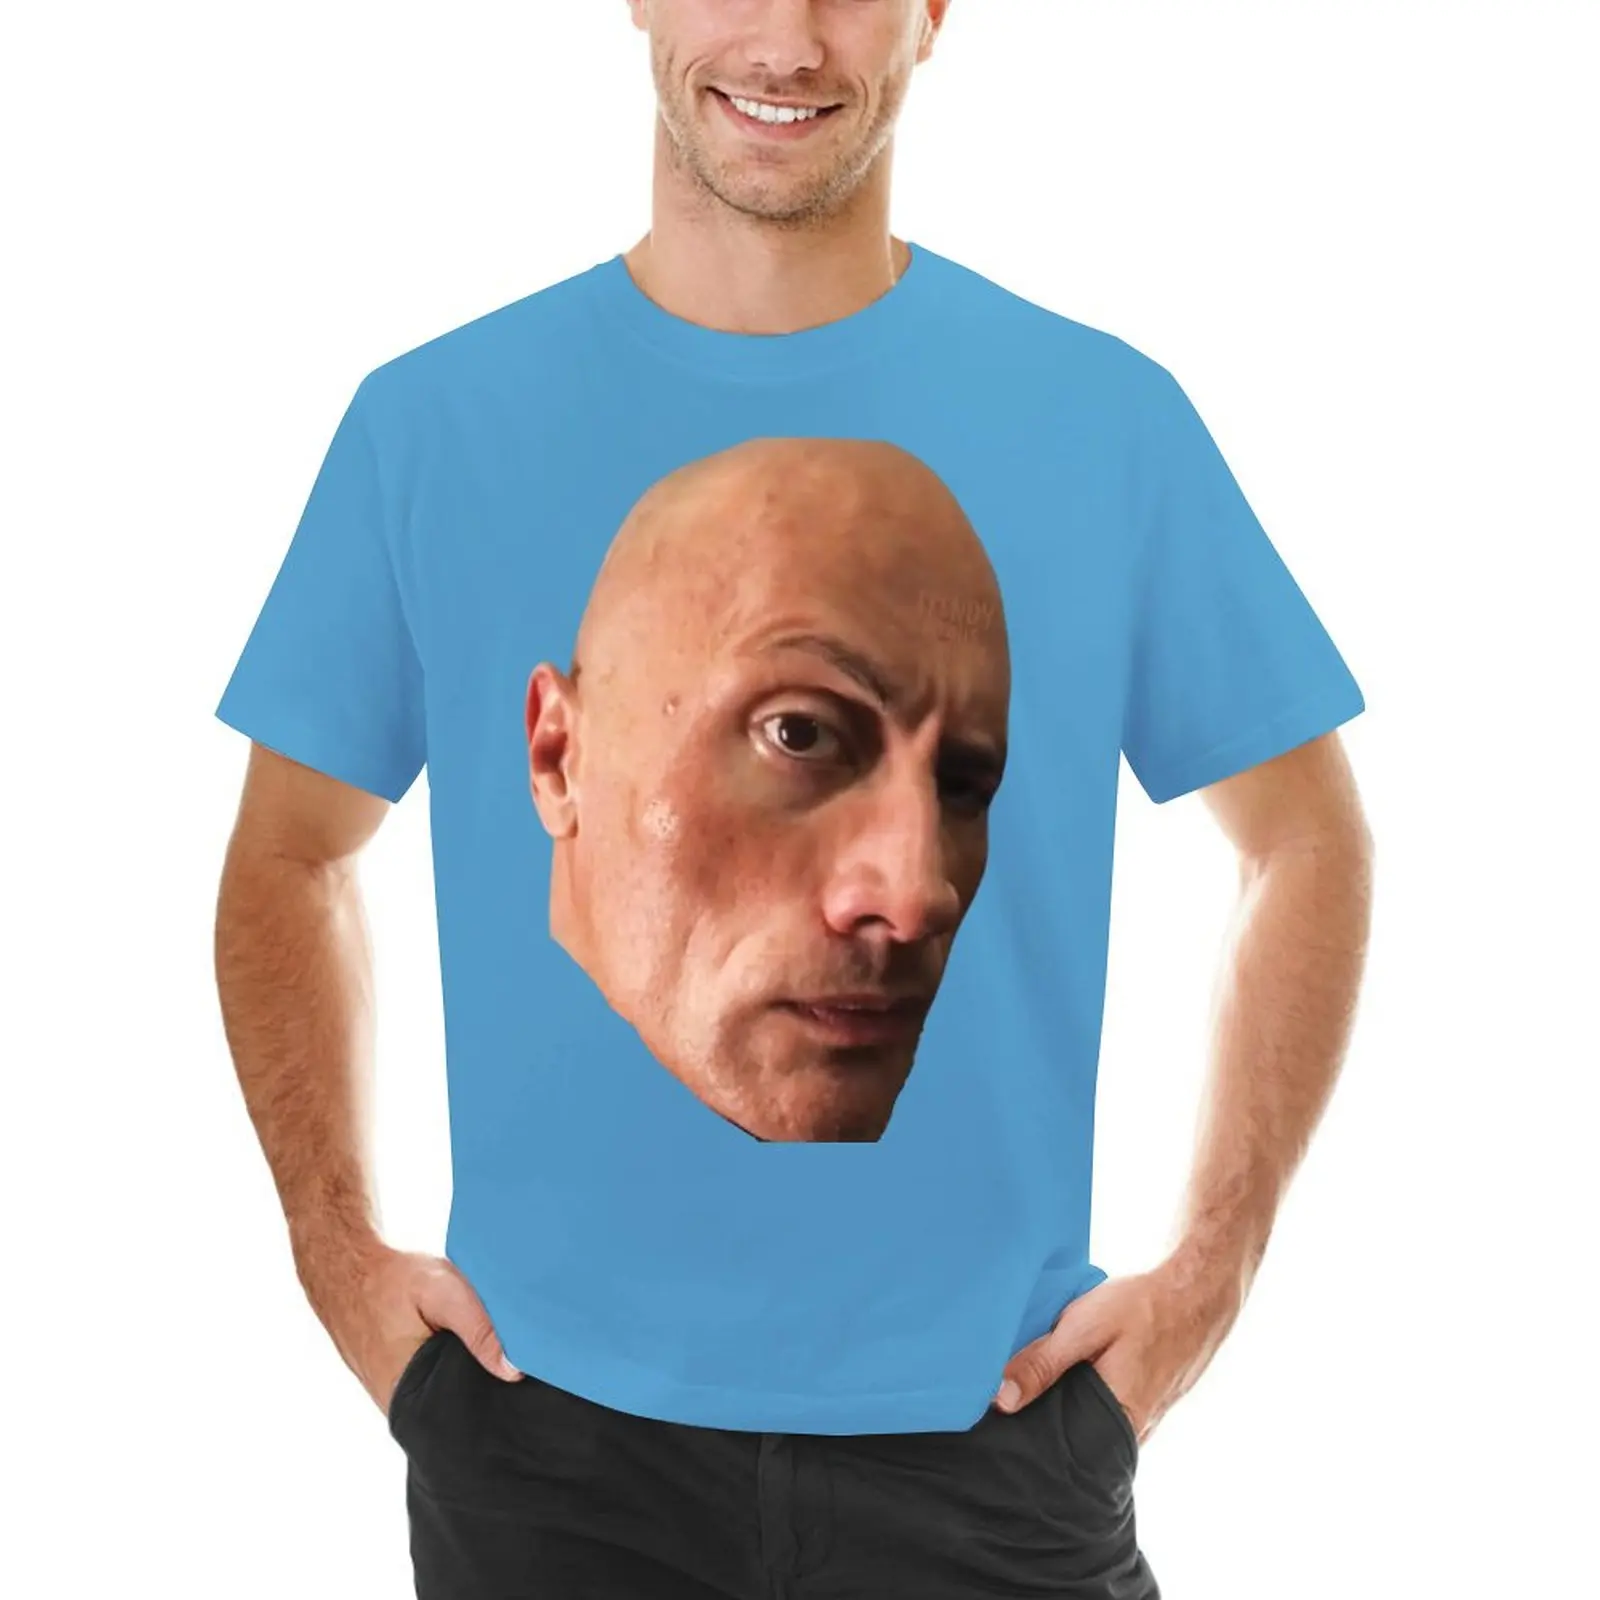 The Rock Eyebrow Raise Face Meme T-Shirt Blouse summer top sports